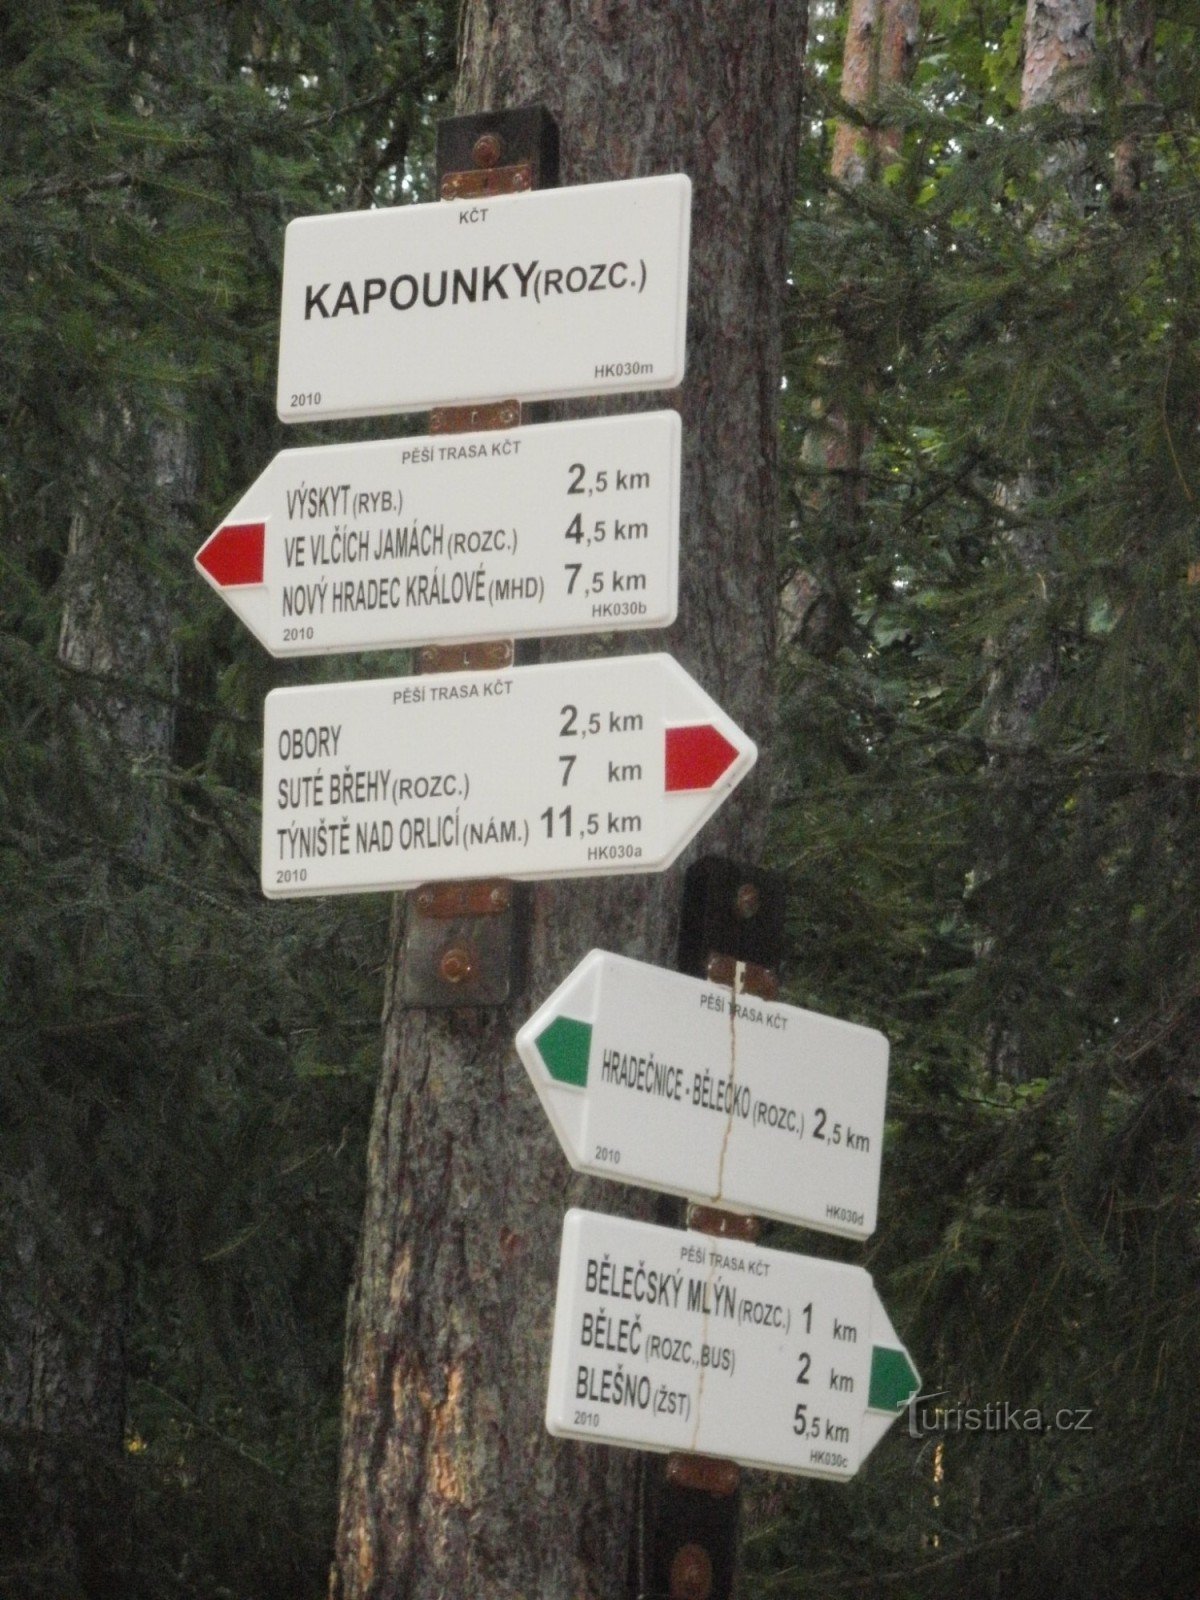 Răscruce Kapounky - Hradecké lesy